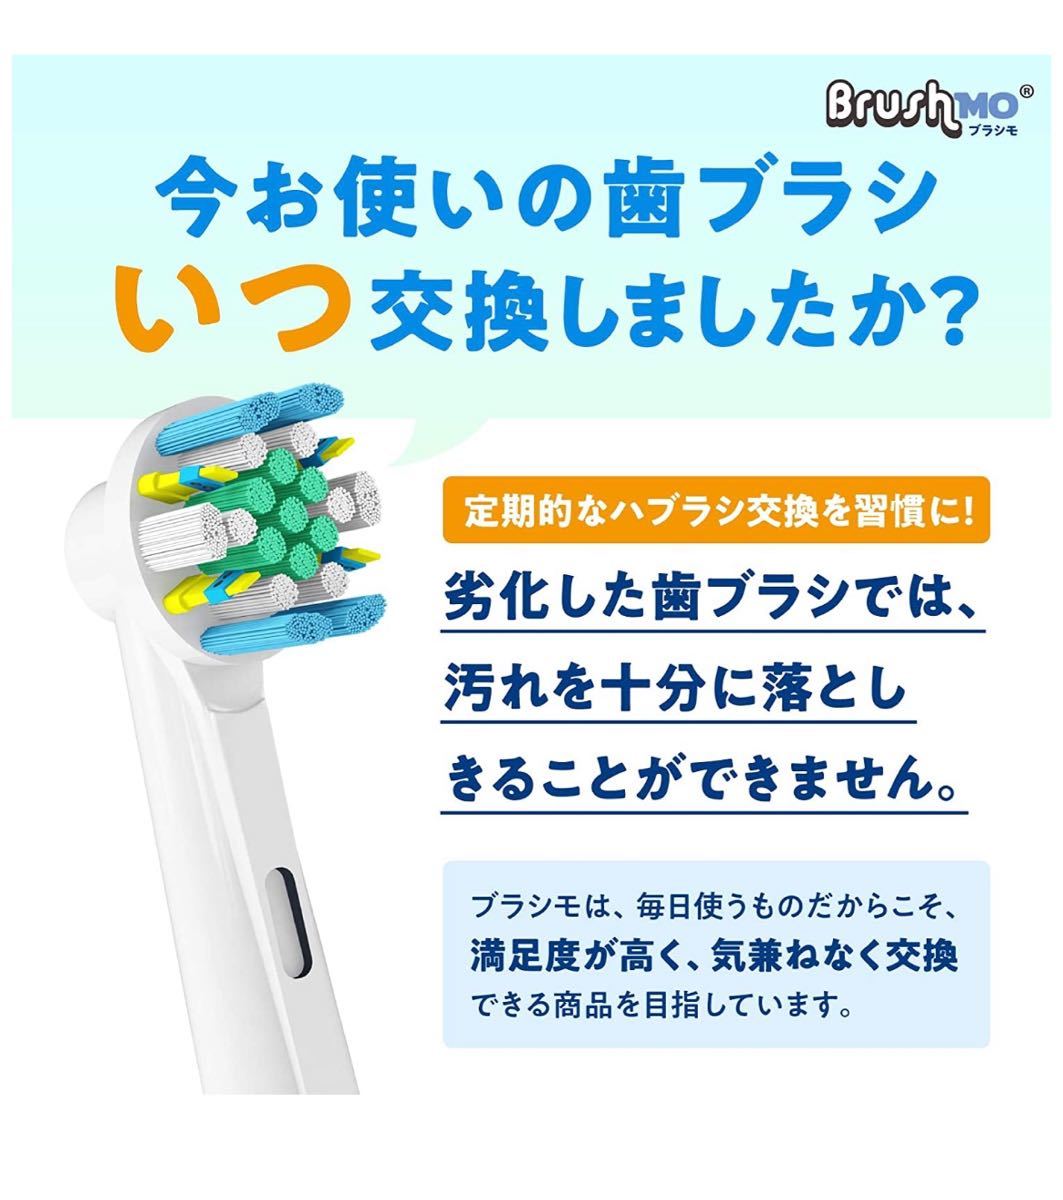 ブラシモ ブラウン オーラルB 電動歯ブラシ用 替えブラシ 対応